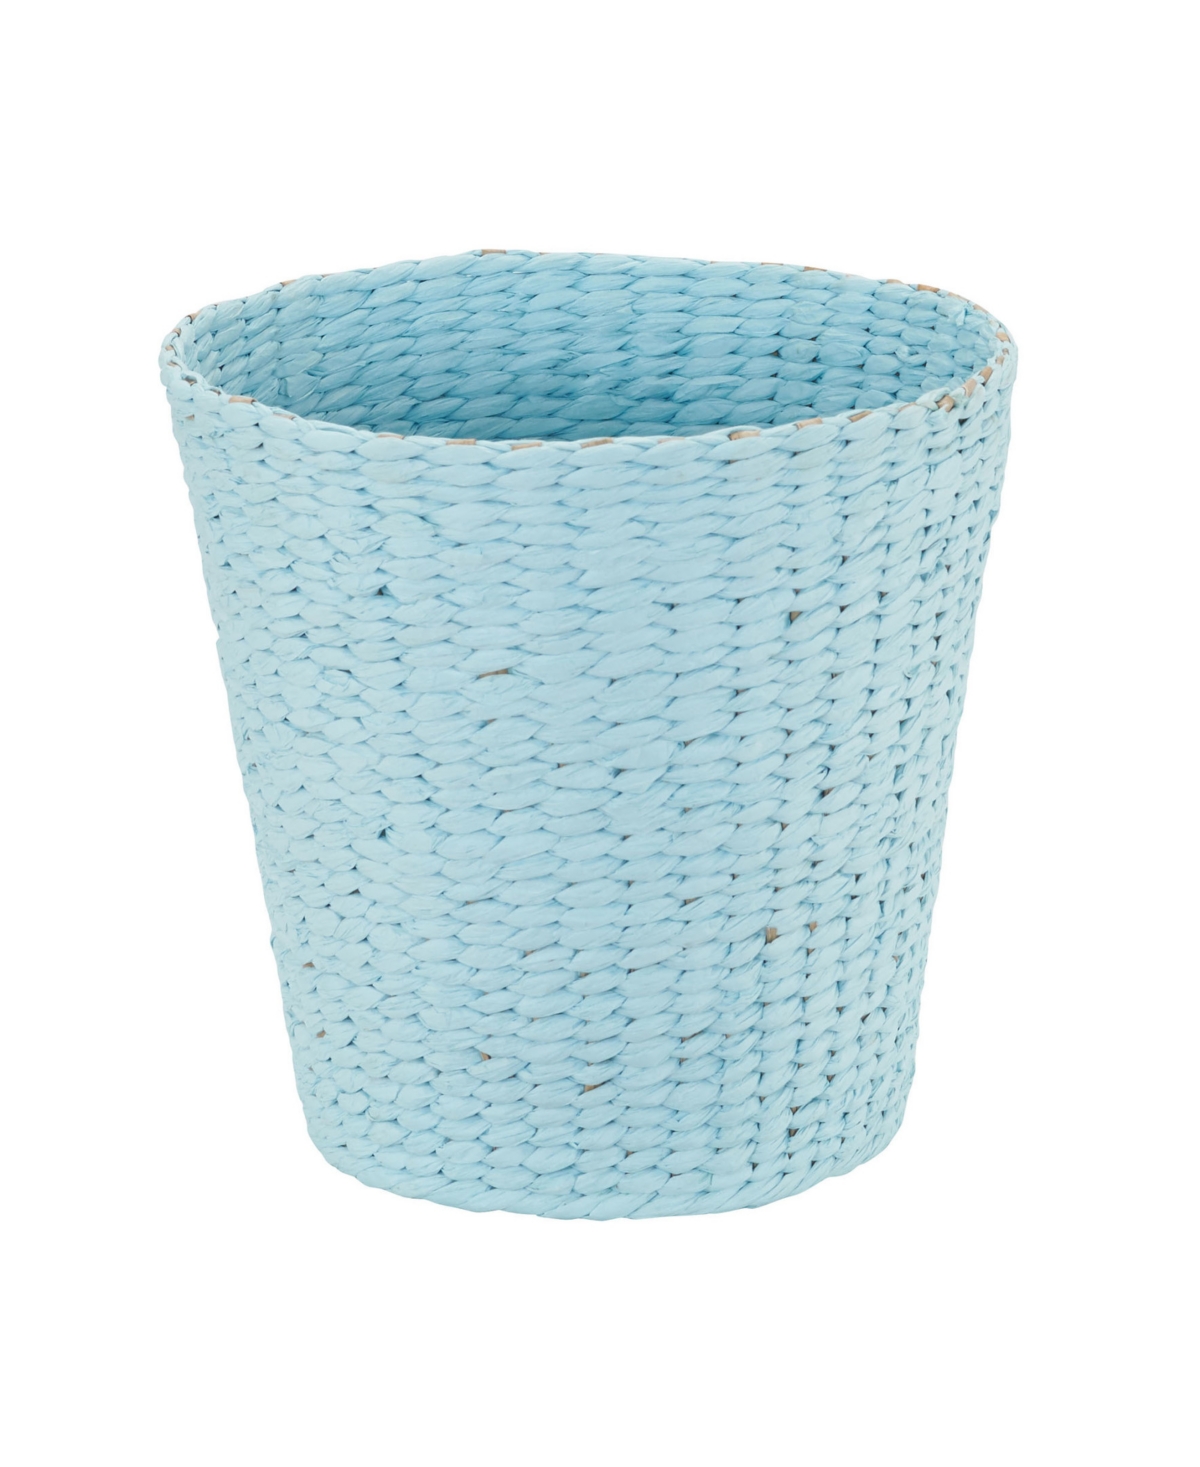 Wicker Waste Basket - Blue